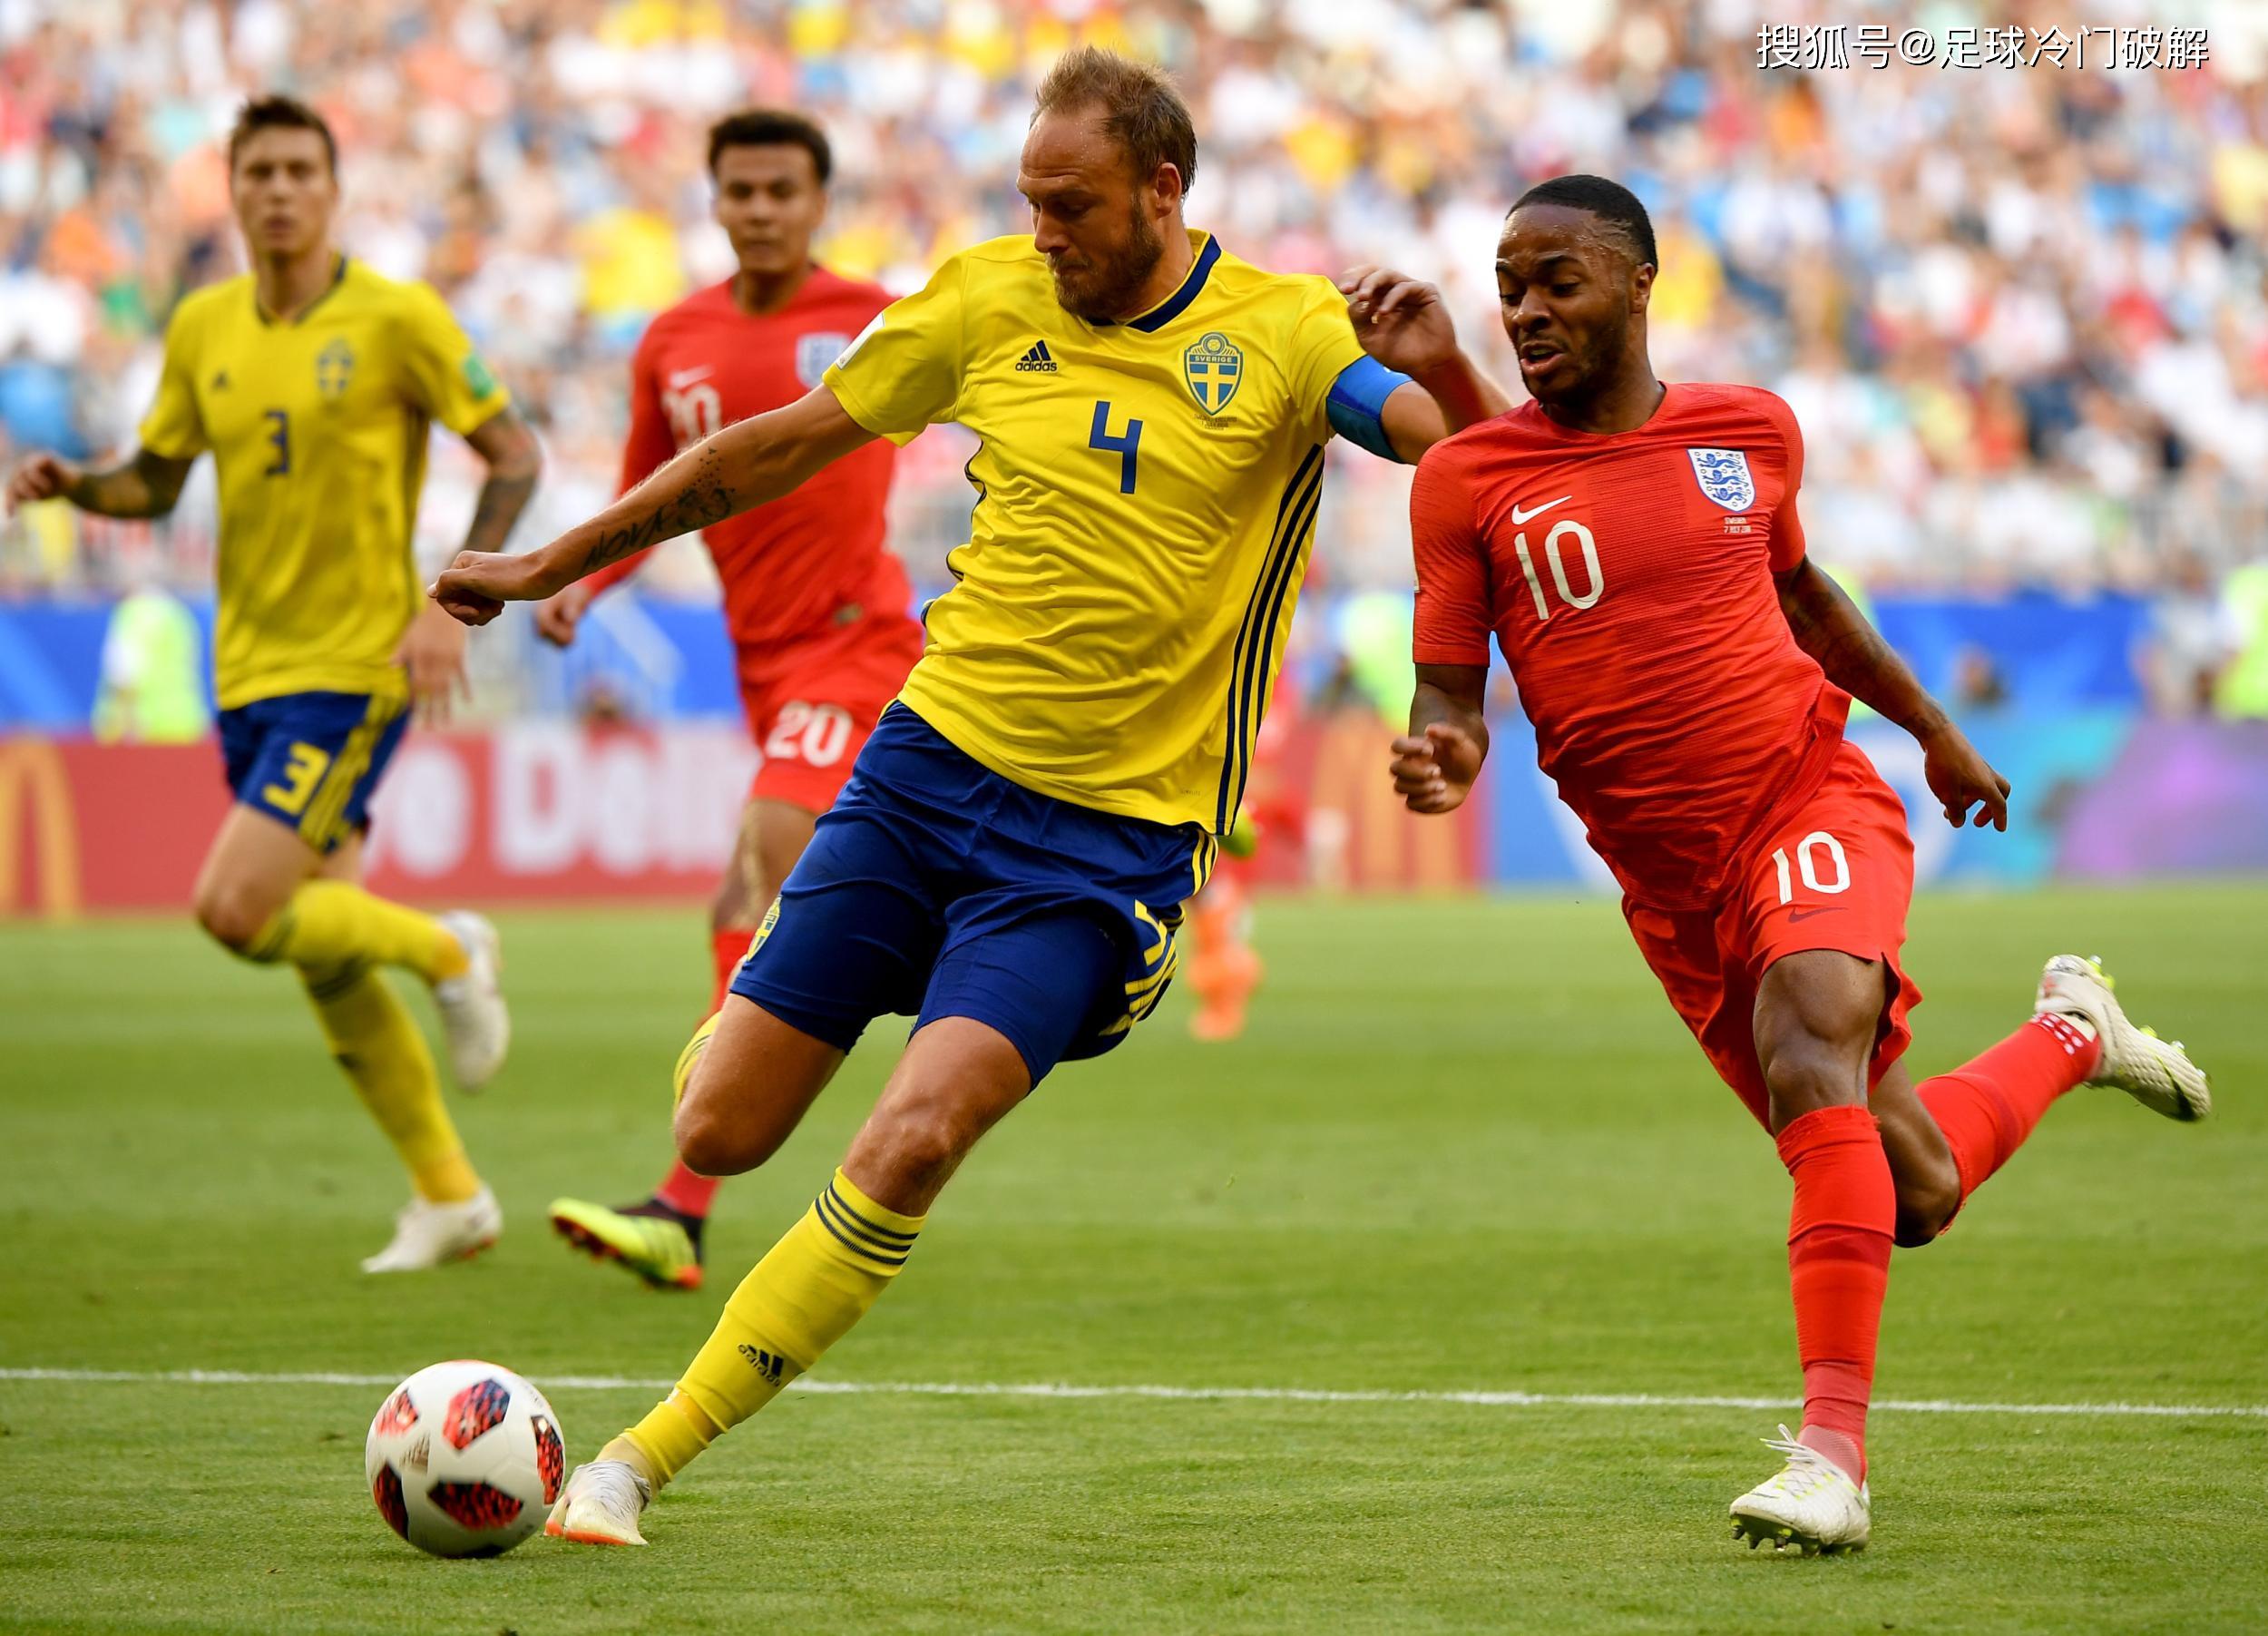 竞猜足球比分推荐,罗马尼亚vs瑞典,欧洲杯为出线客队实力不败